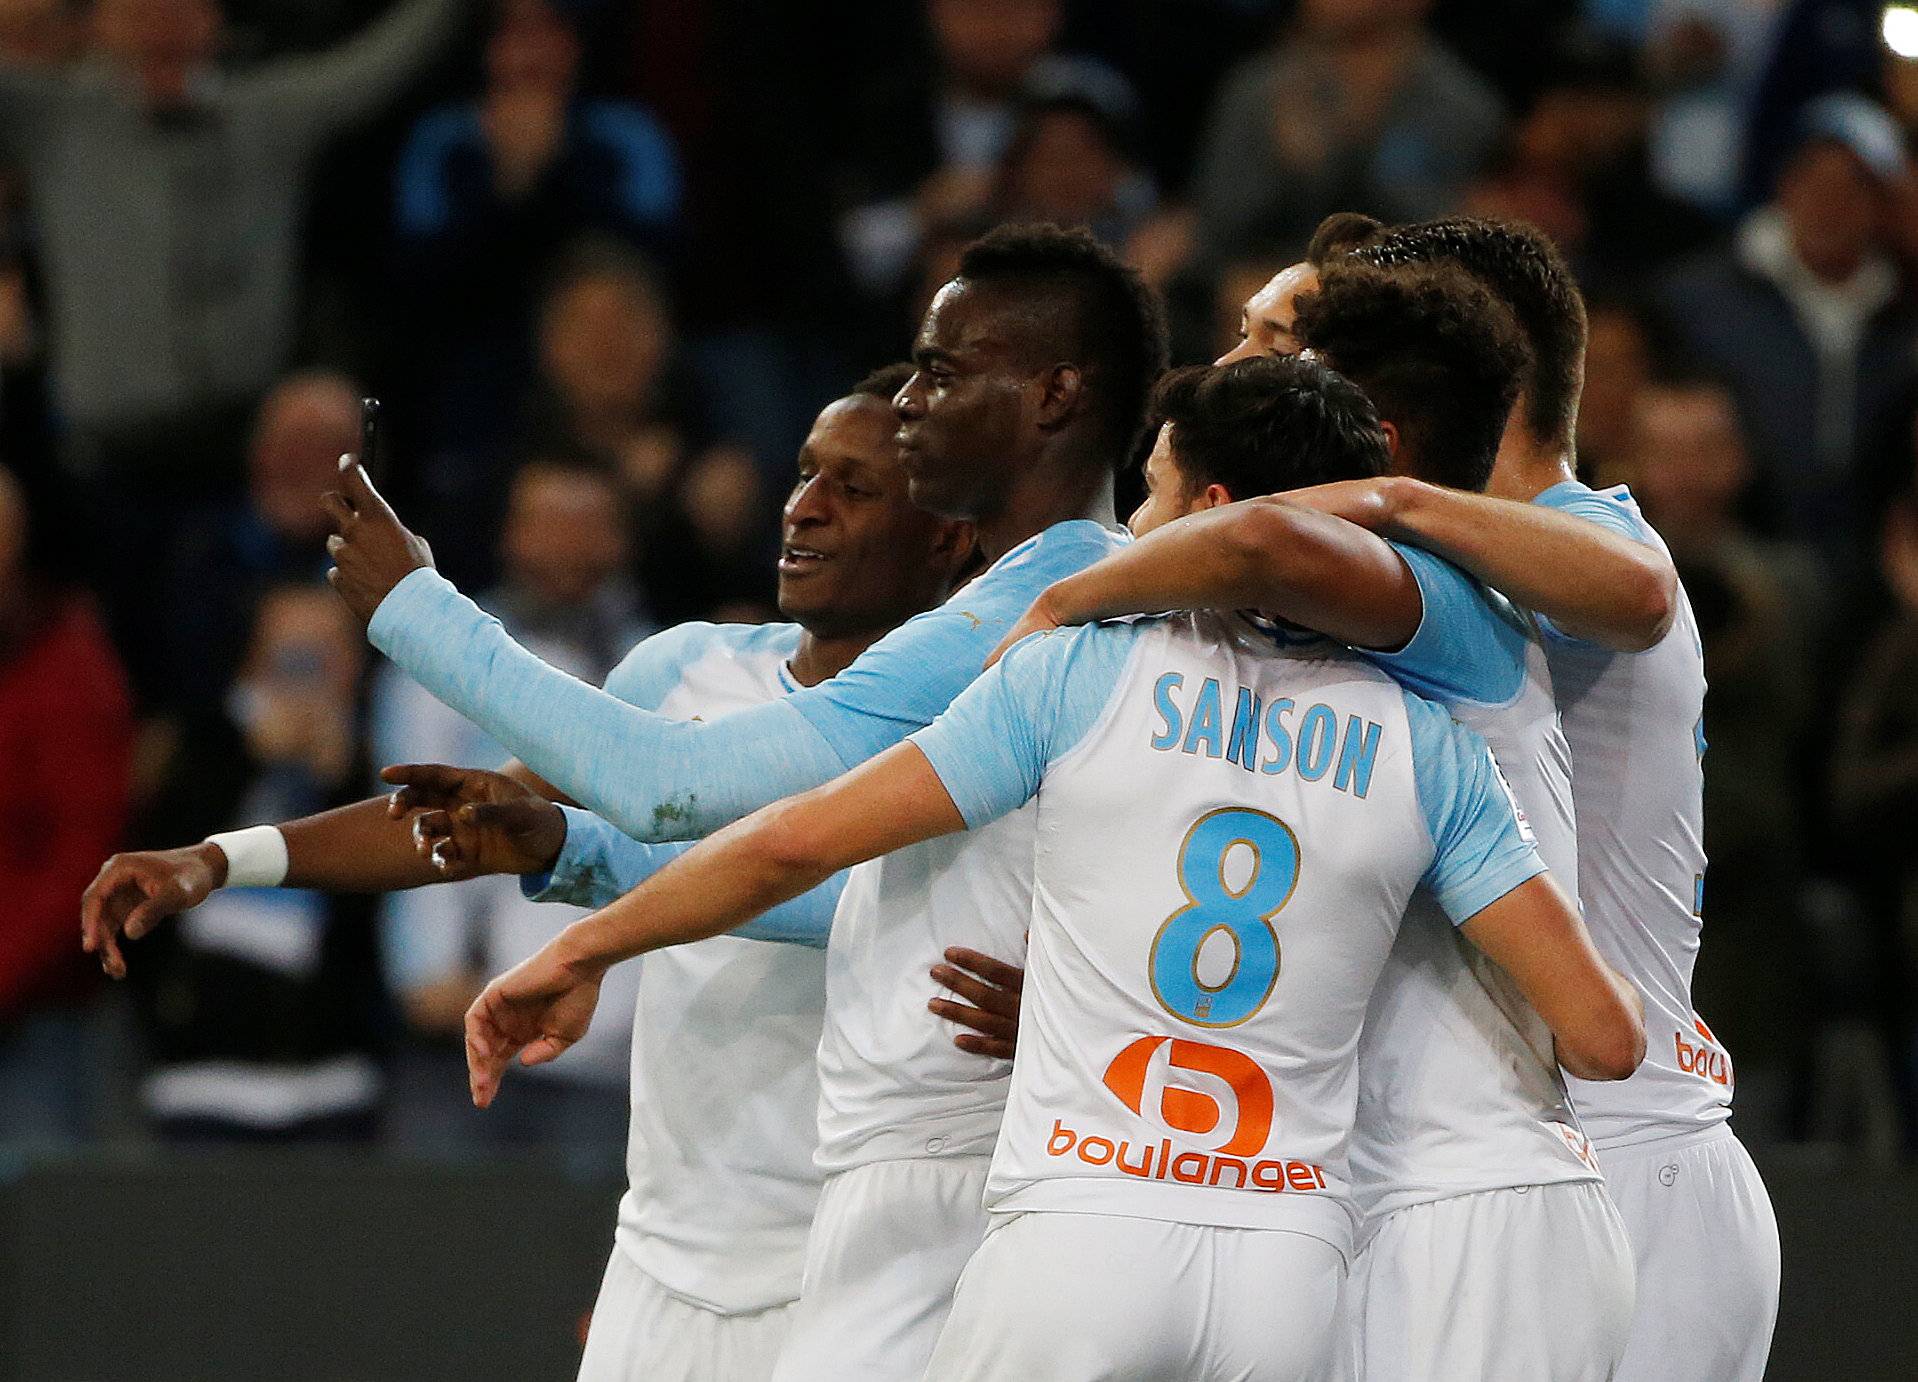 Ligue 1 - Olympique de Marseille v AS Saint-Etienne